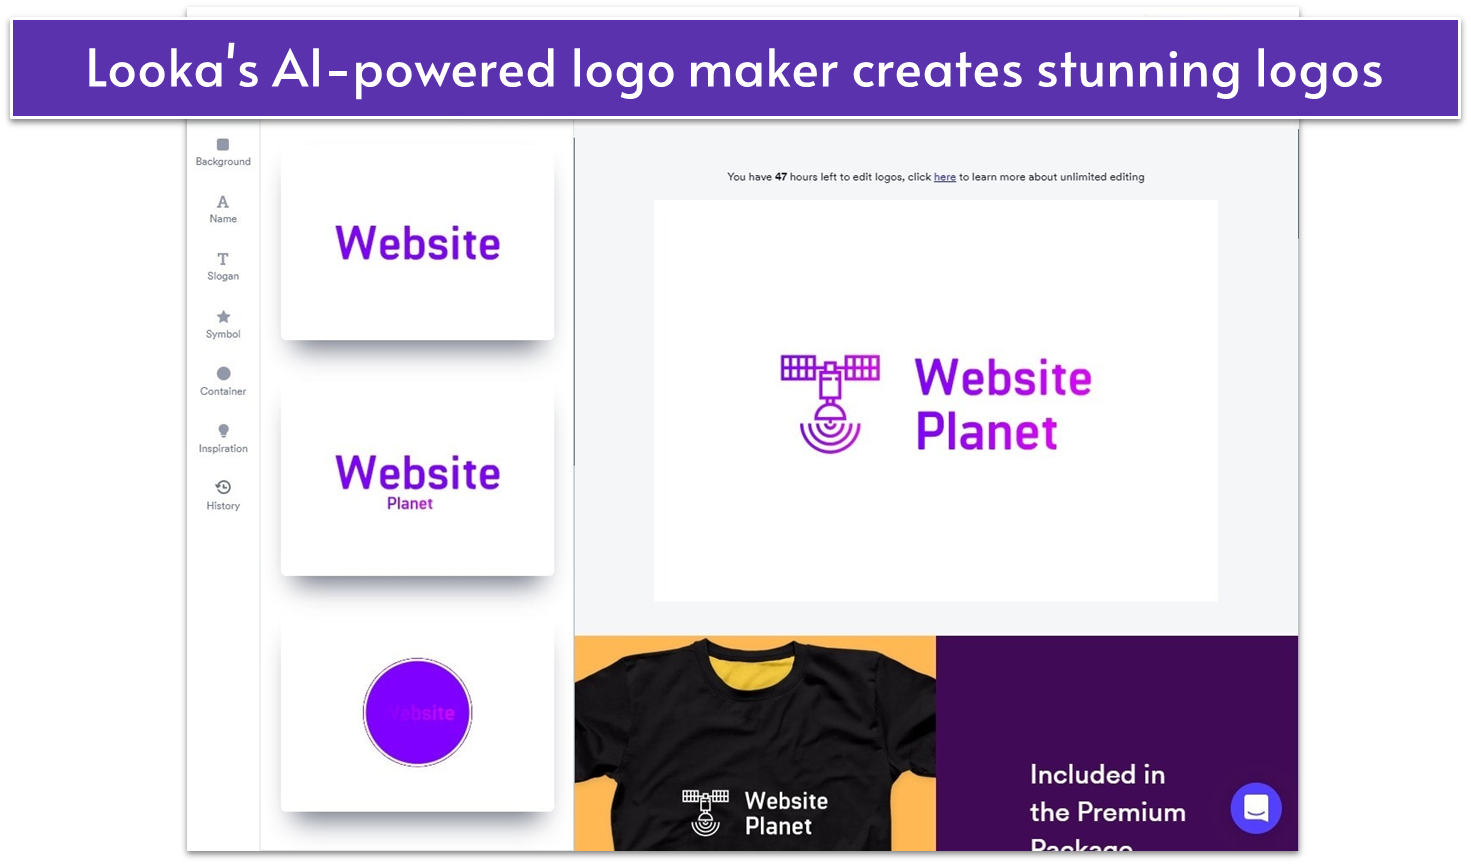 Looka’s logo samples